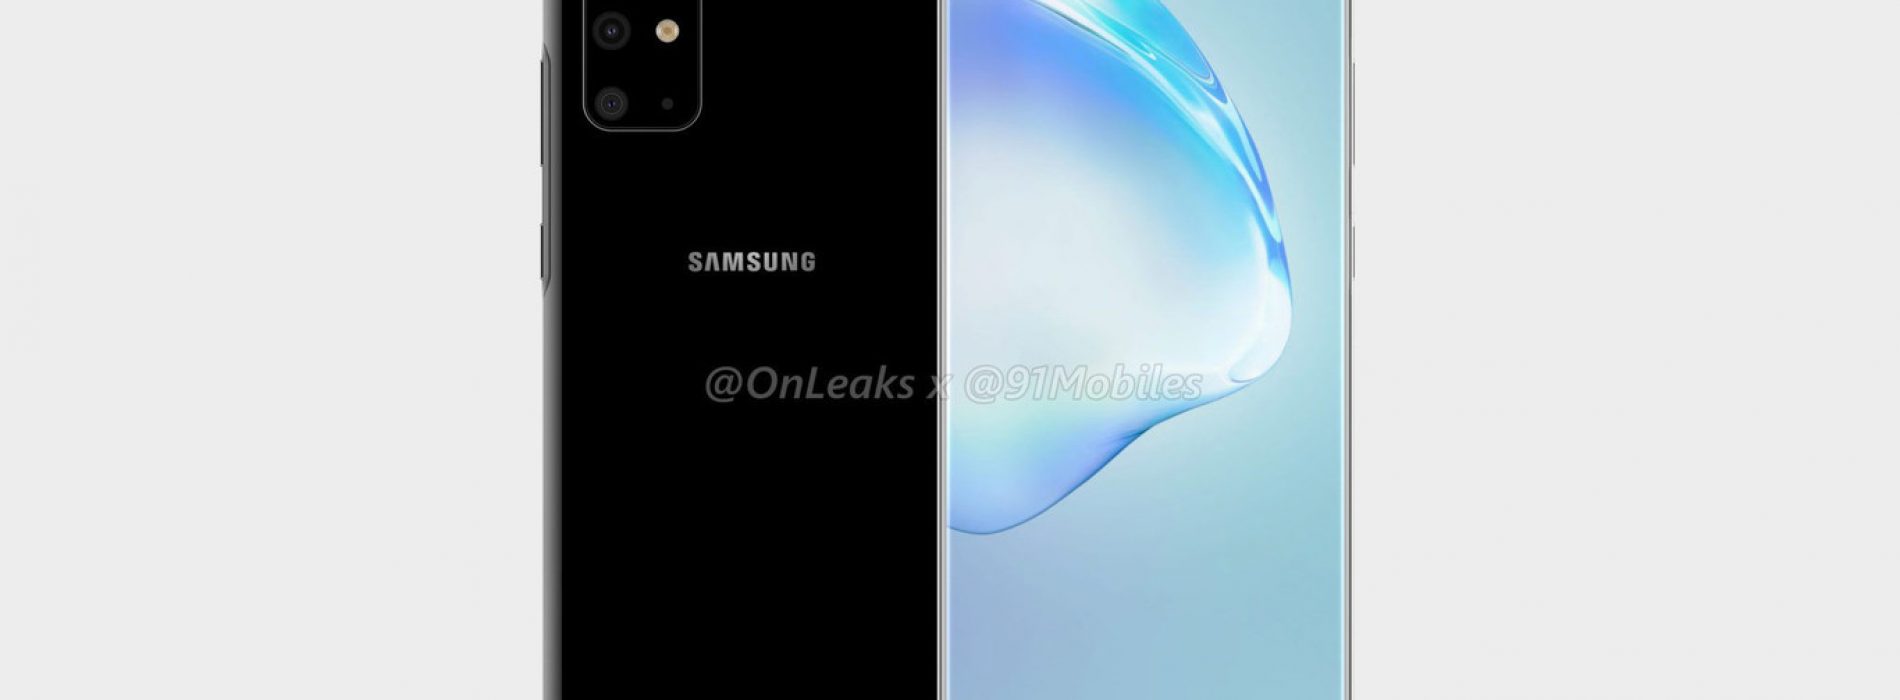 Samsung Galaxy S20: el próximo smartphone insignia podría no ser el Galaxy S11